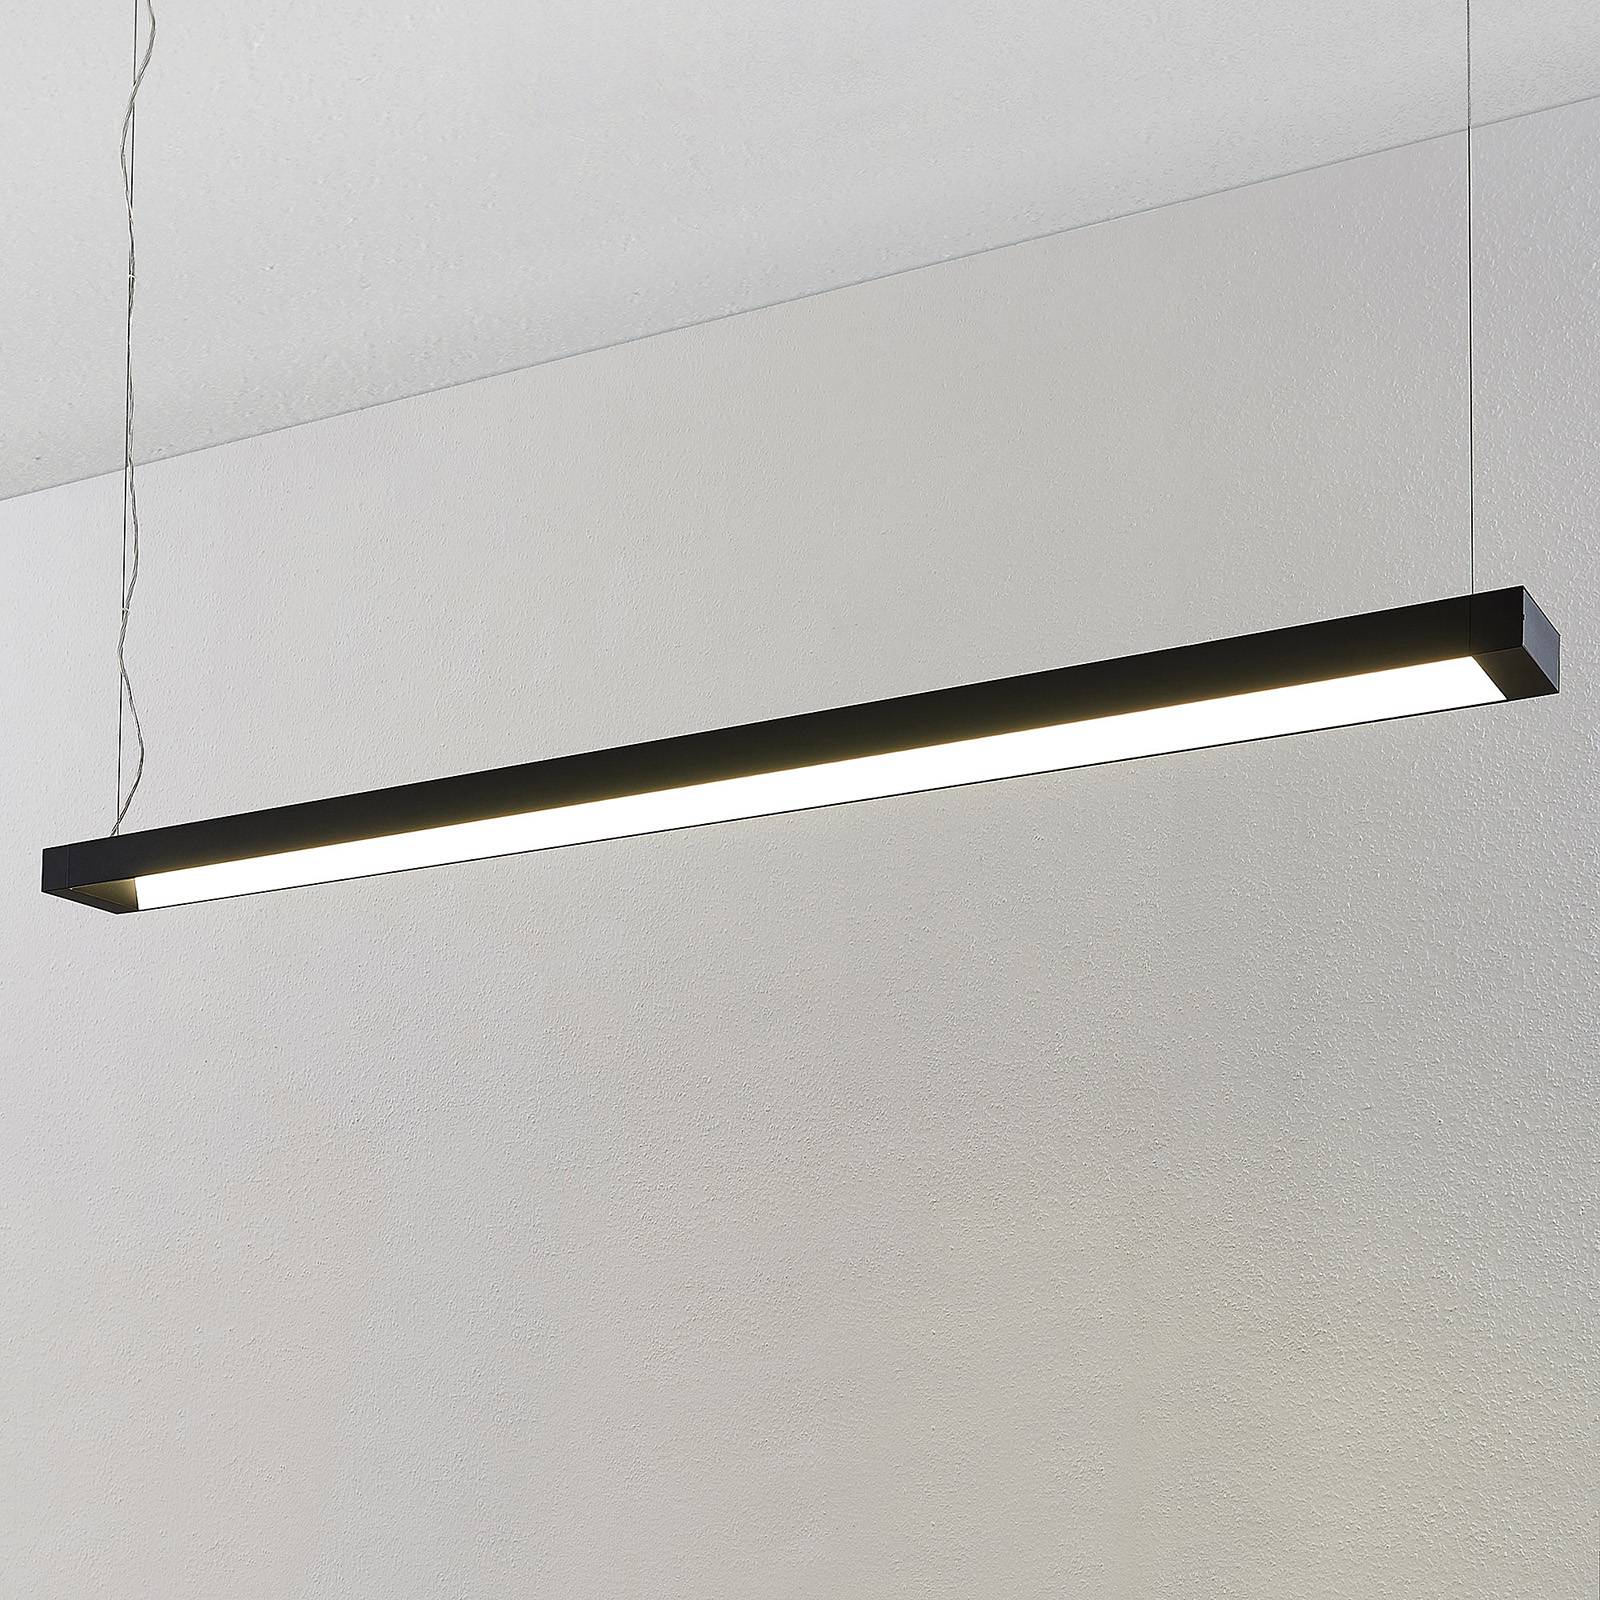 Image of Arcchio Cuna LED sospensione, nero, angolare 162cm